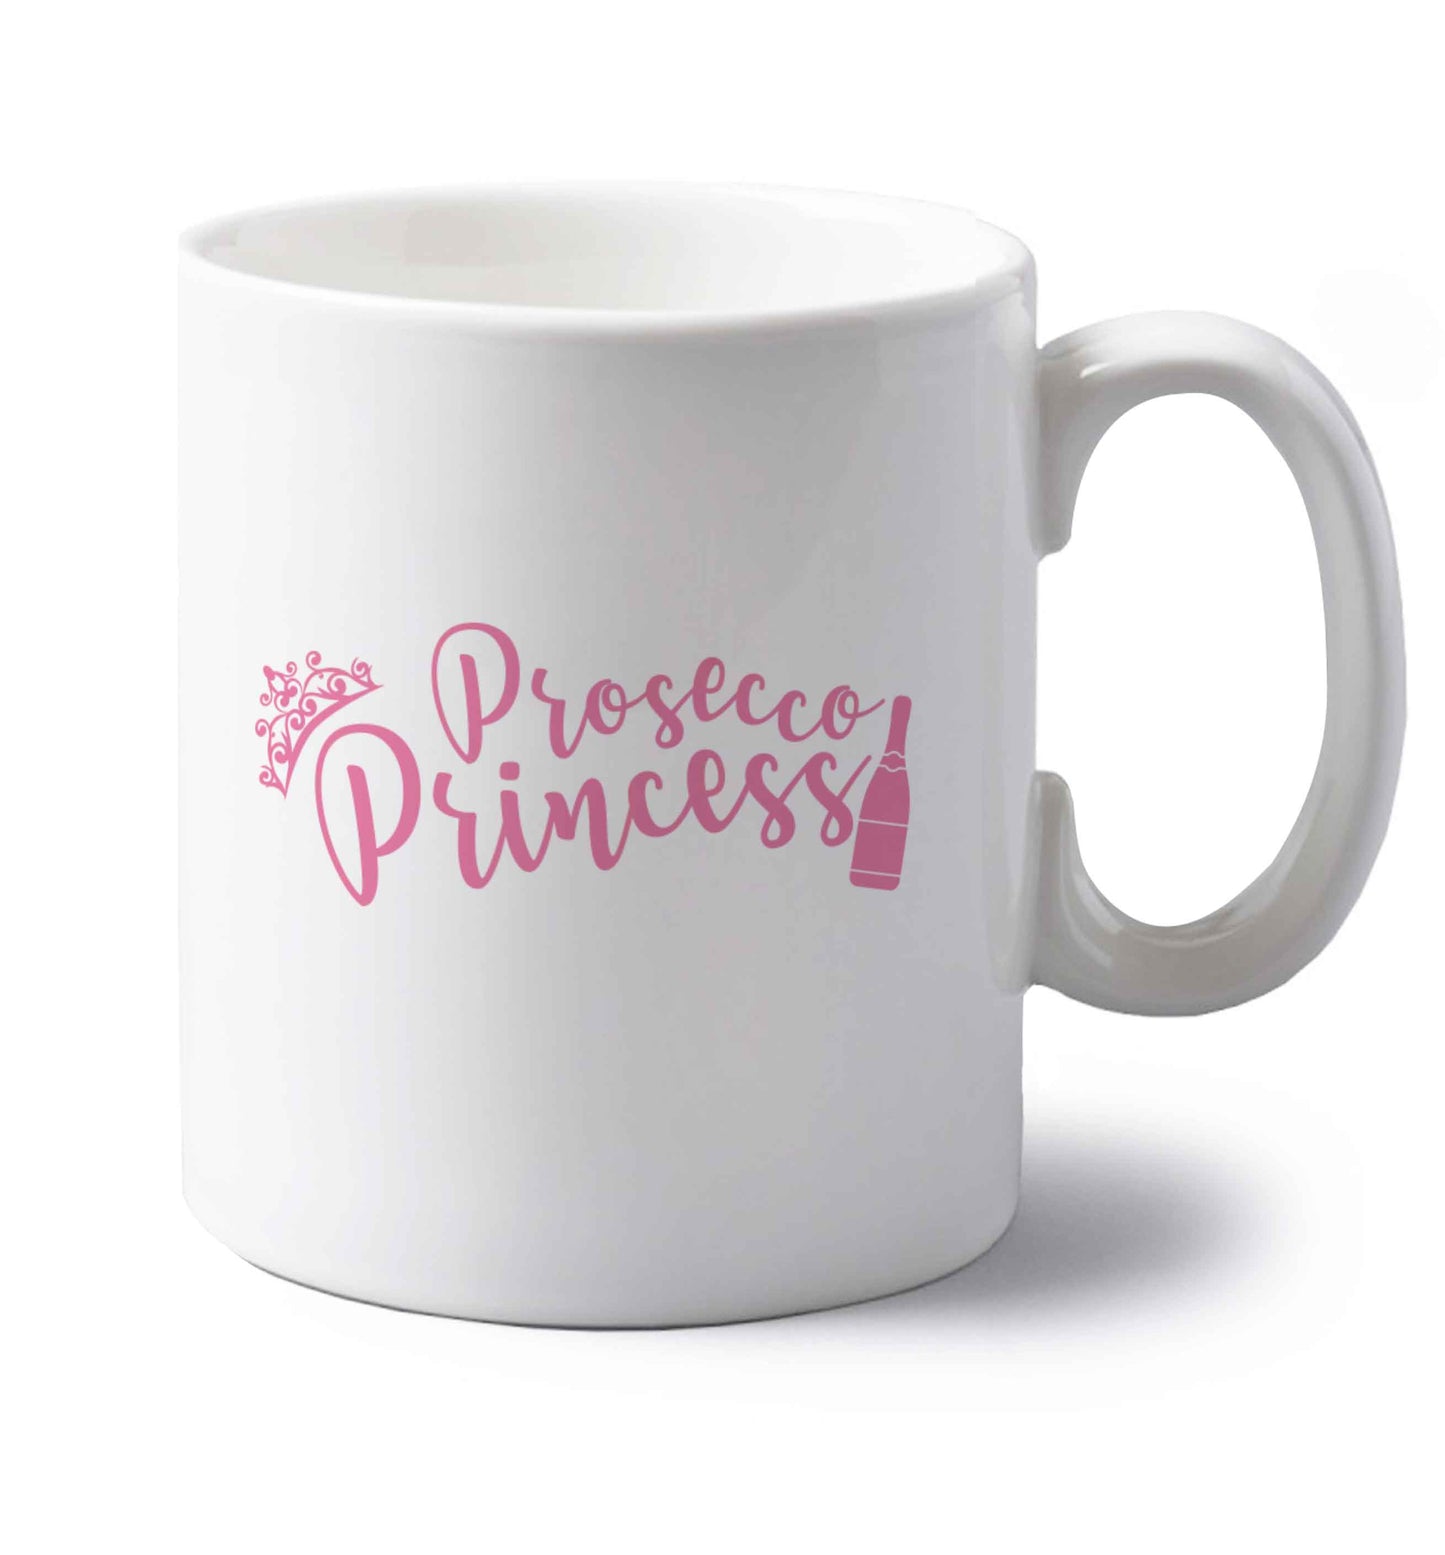 Prosecco princess left handed white ceramic mug 